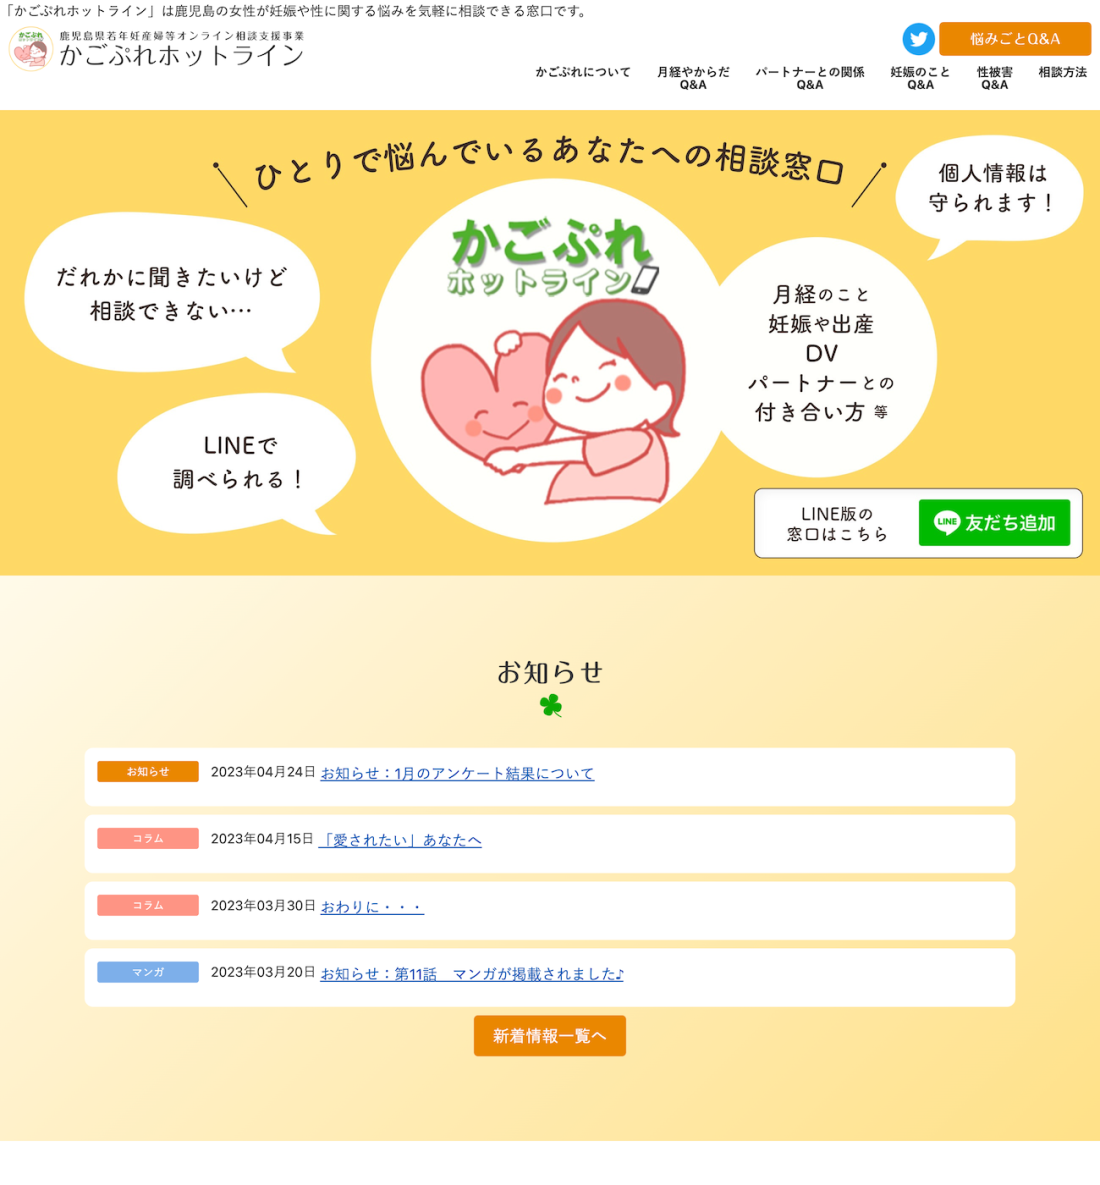 鹿児島県若年妊産婦等オンライン相談支援事業 かごぷれホットライン